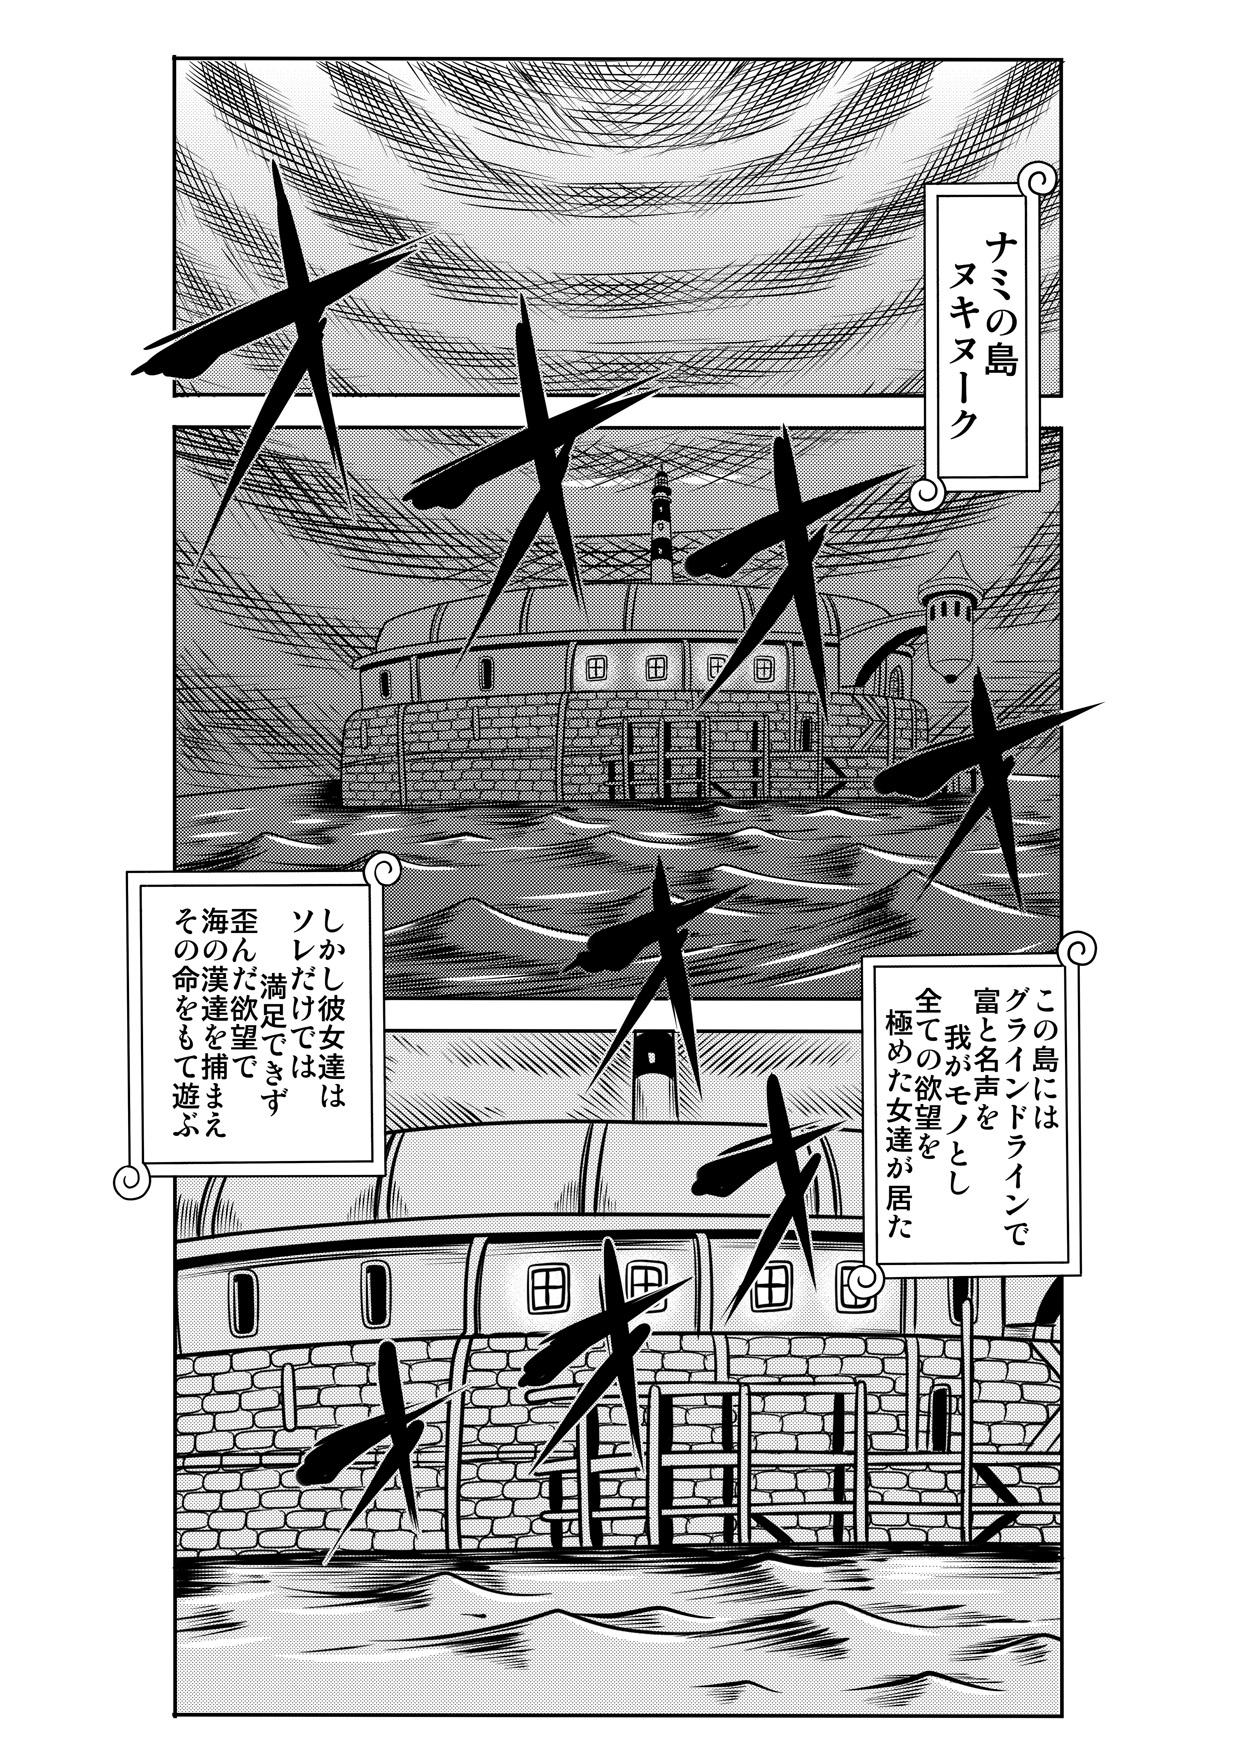 Fetiche "Nukinuki no Mi" no Nouryokusha 5 - Shinshou Seishounen Juujigun - One piece Action - Page 2